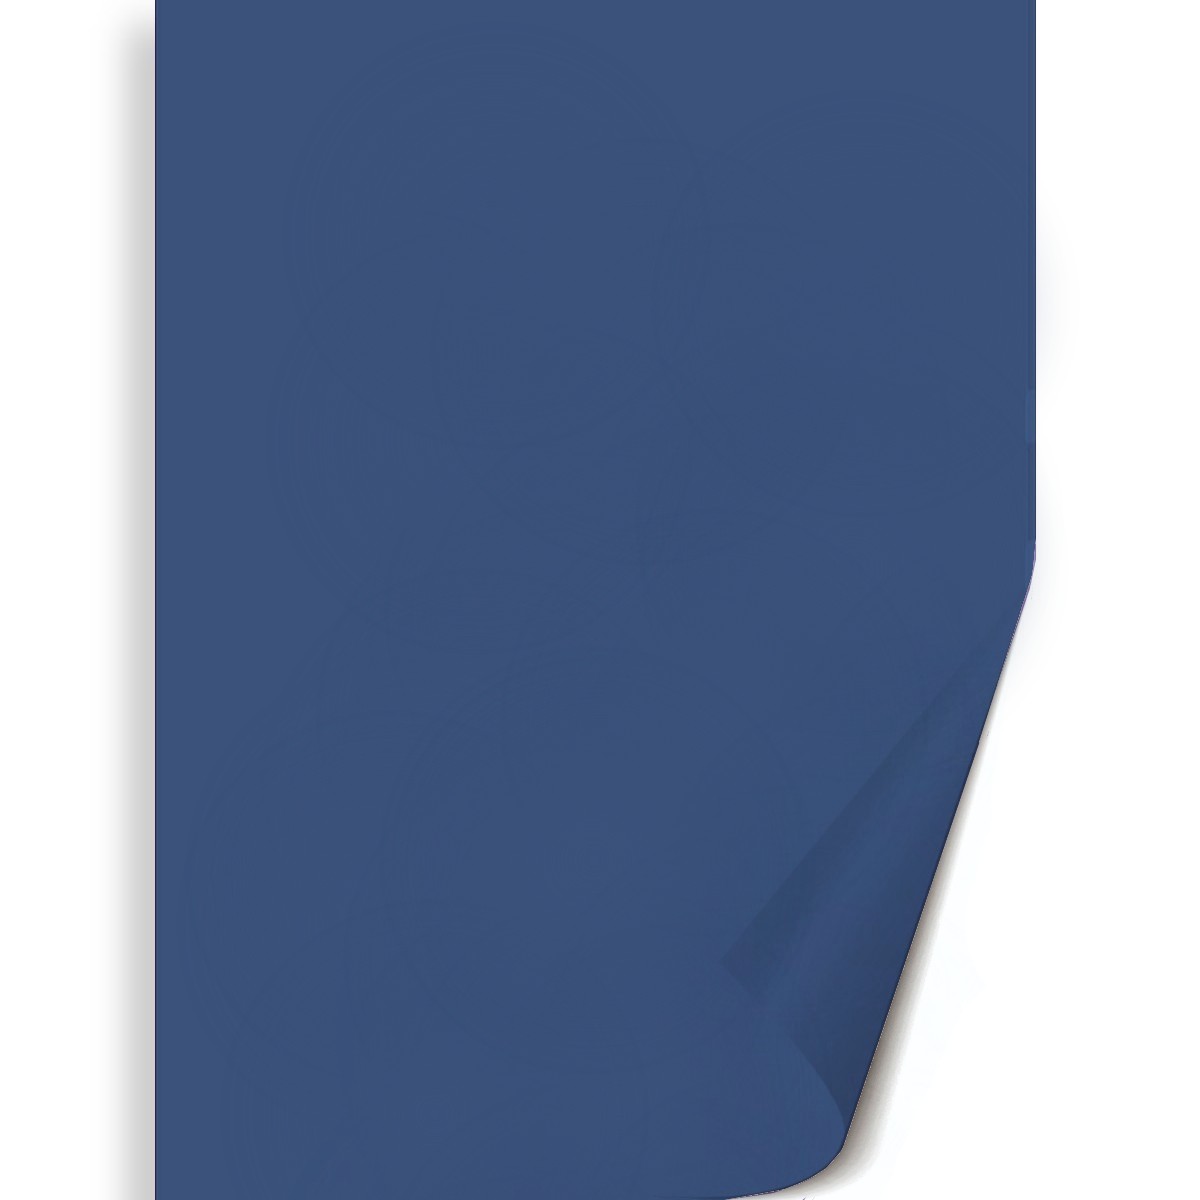 Hartie albastru inchis 50x70cm 130g Meyco 27212